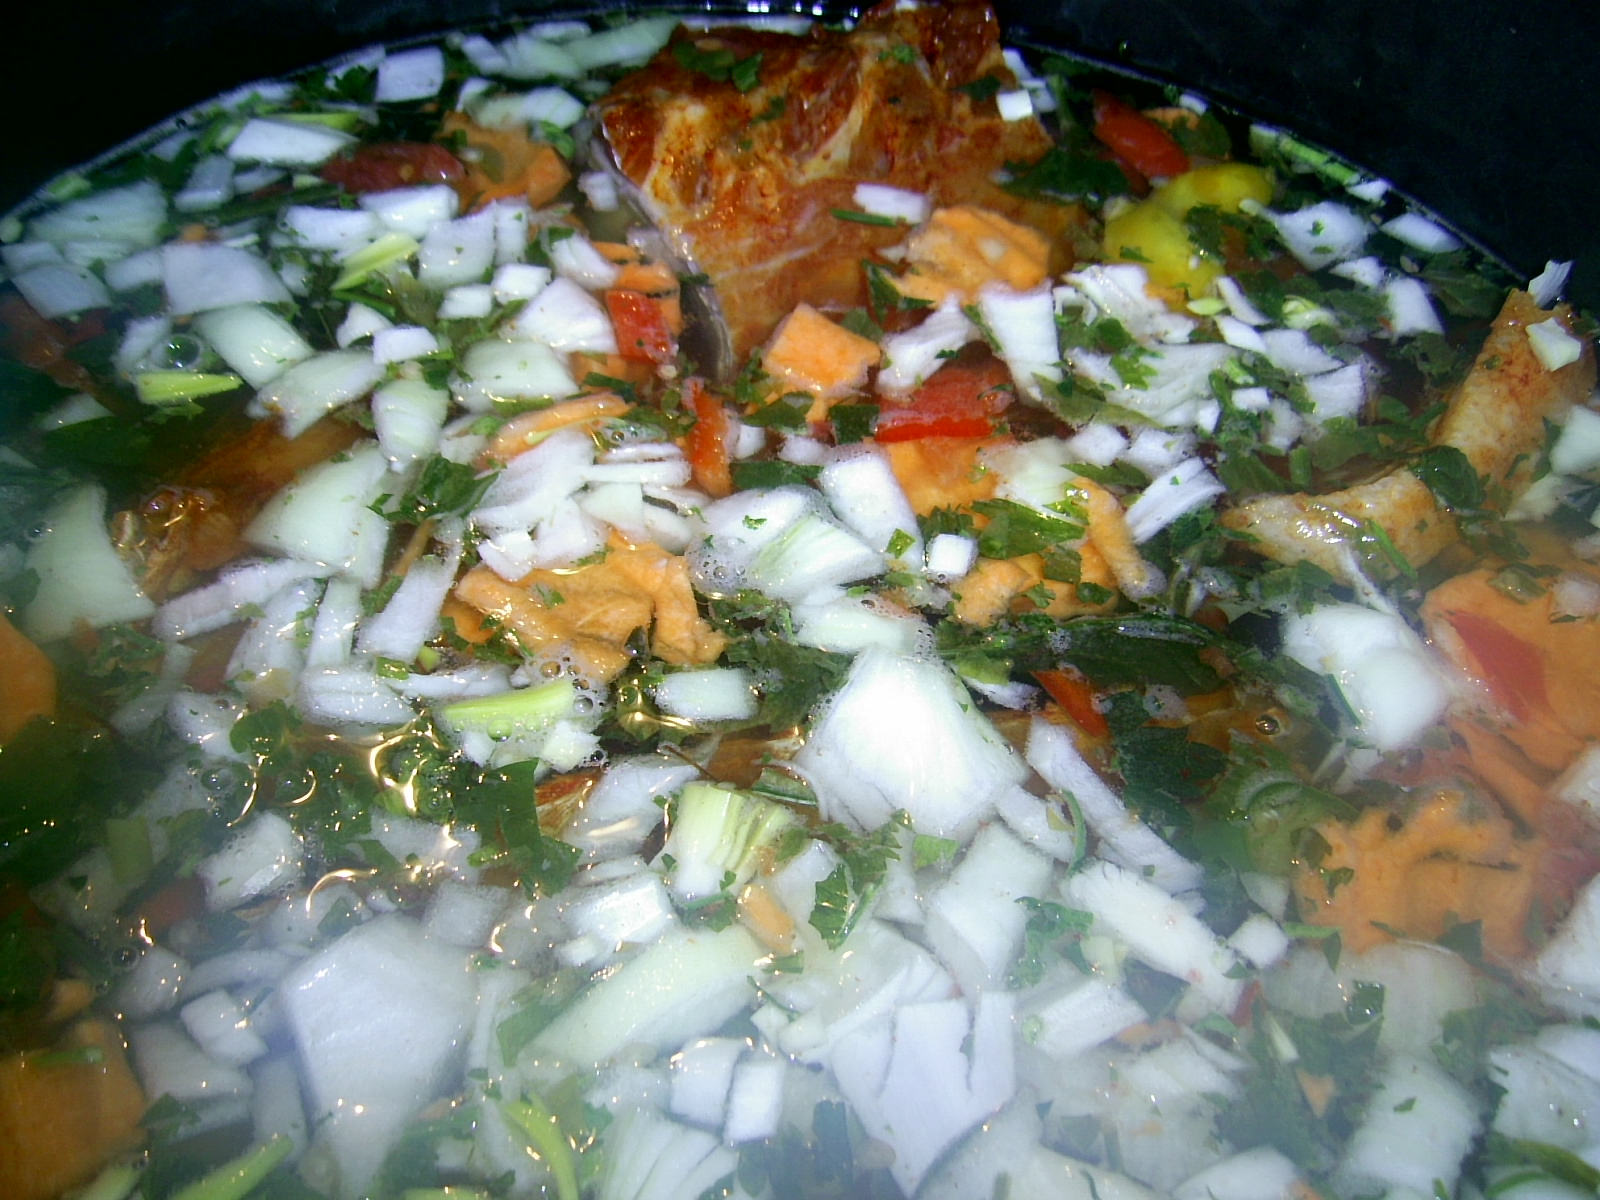 Supa de fasole verde cu afumatura